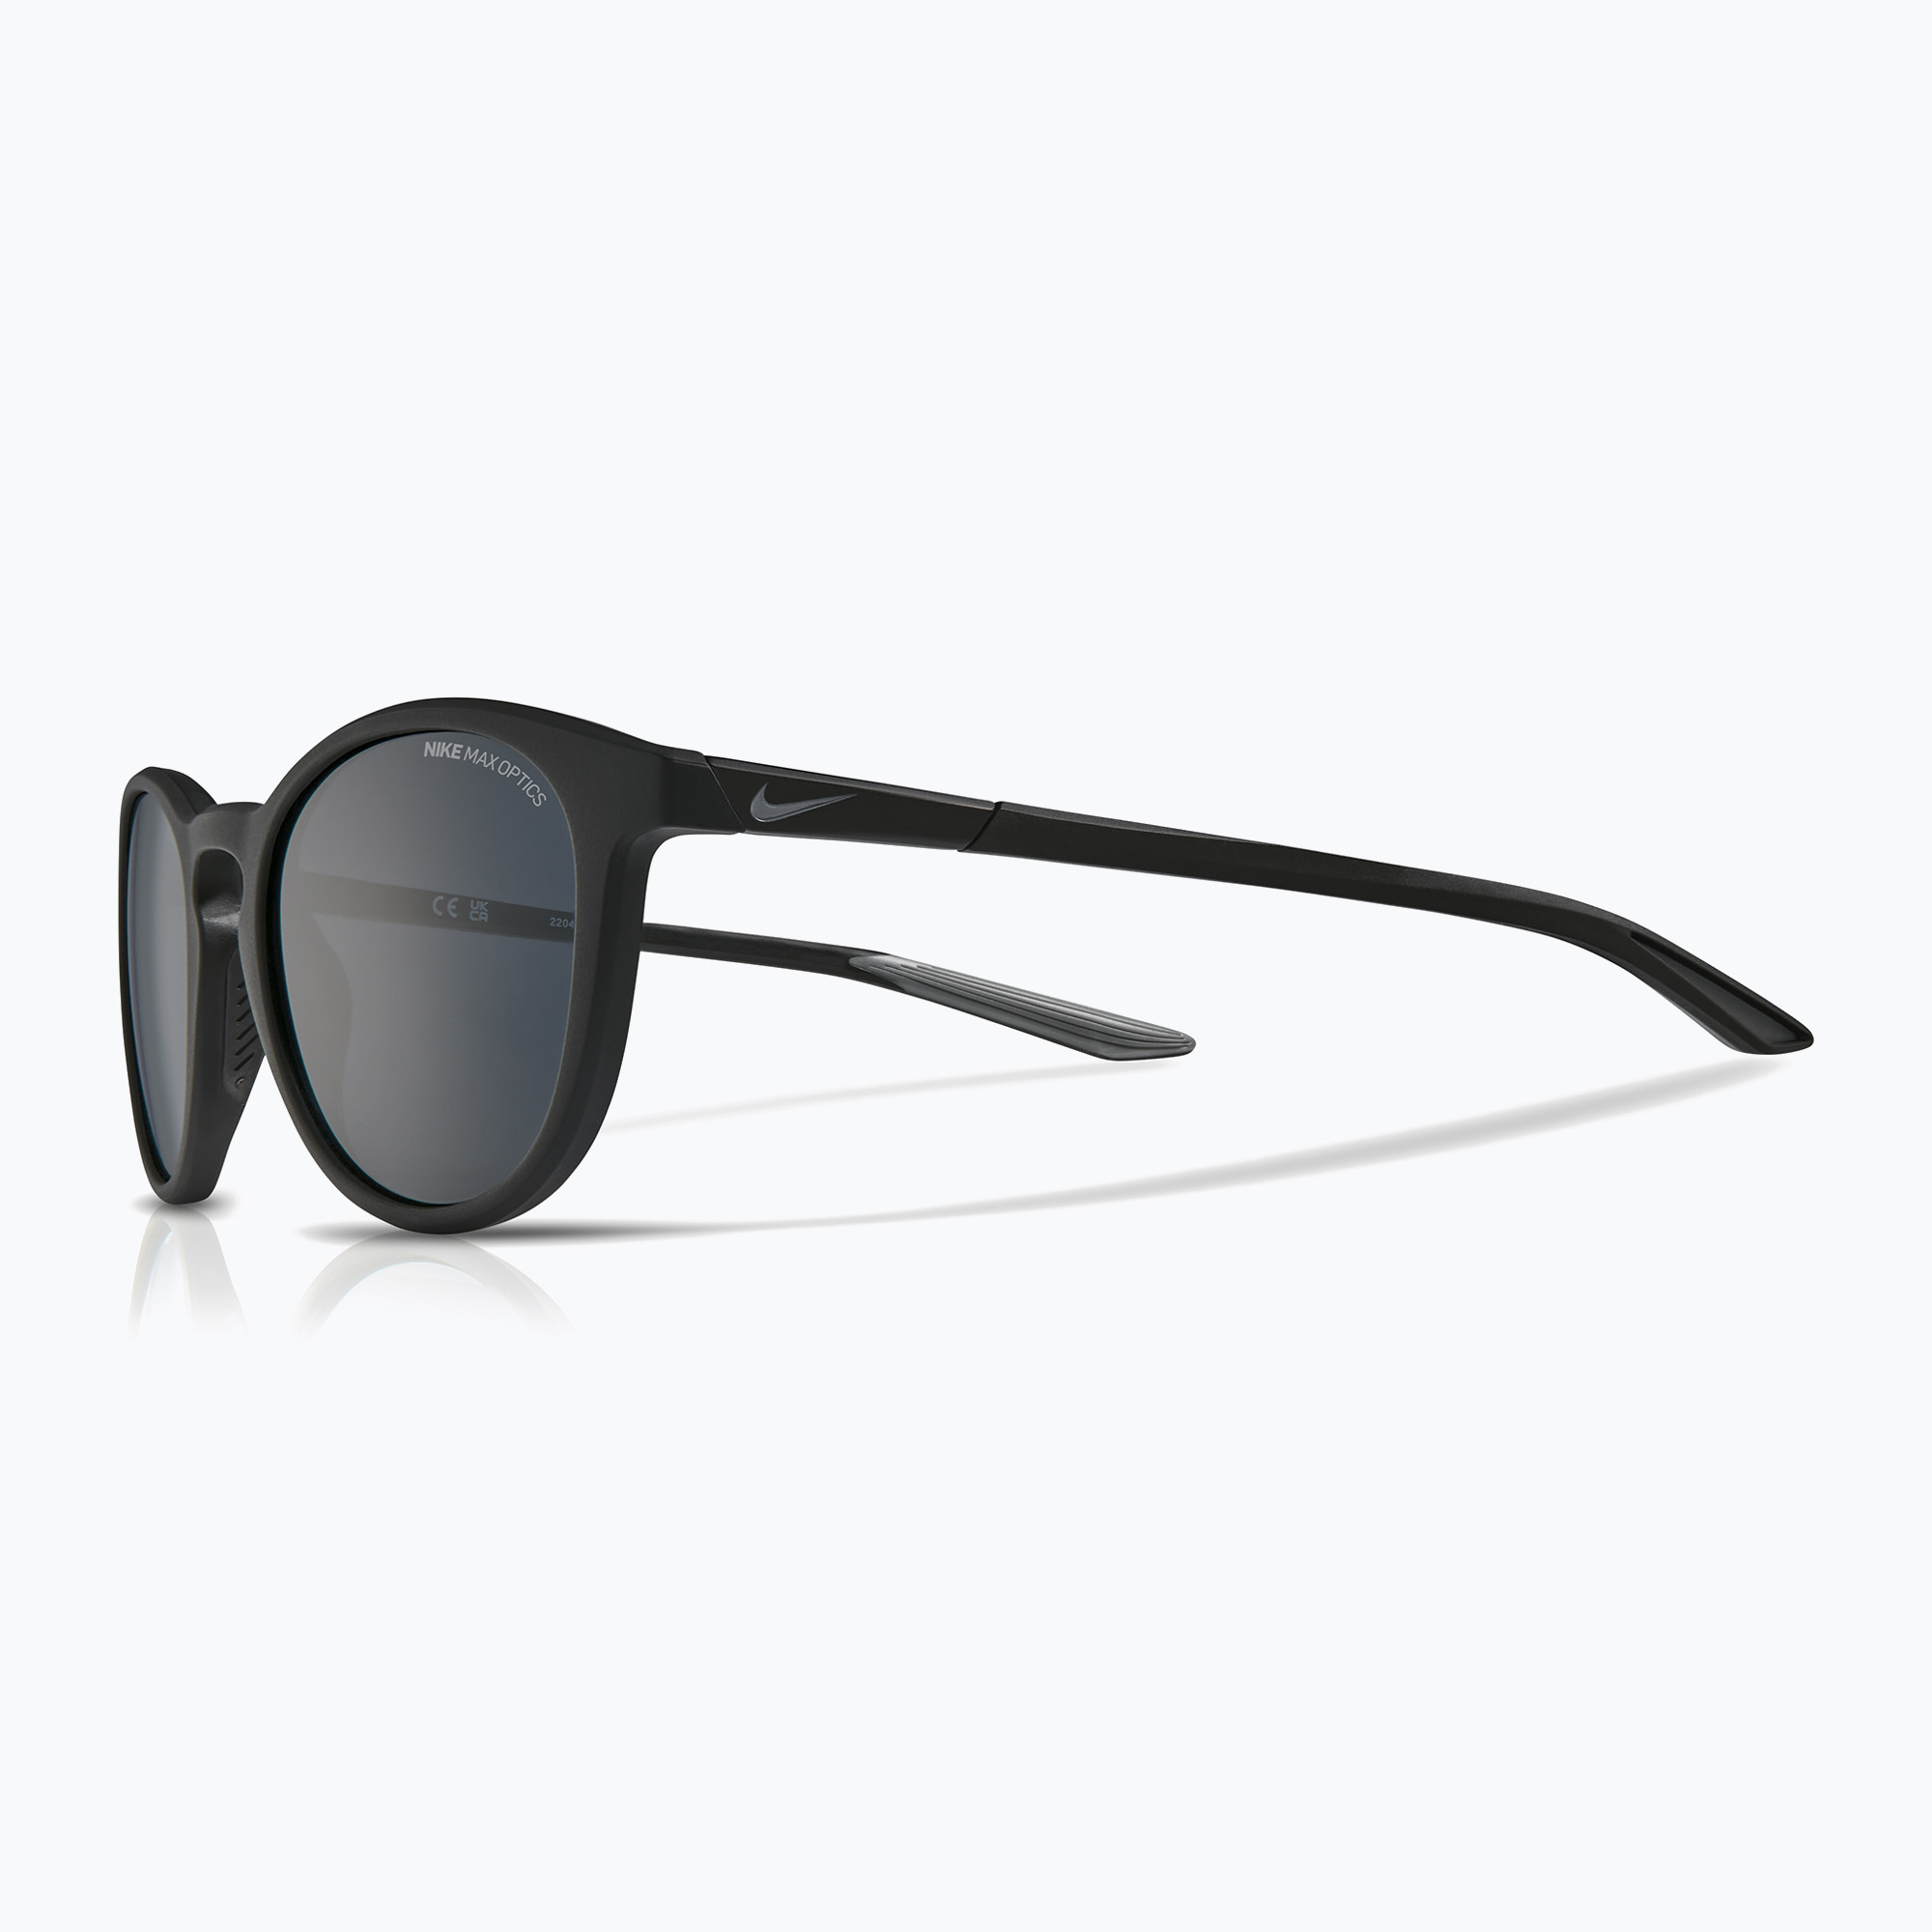 Слънчеви очила Nike Evolution матово черно/тъмно сиво